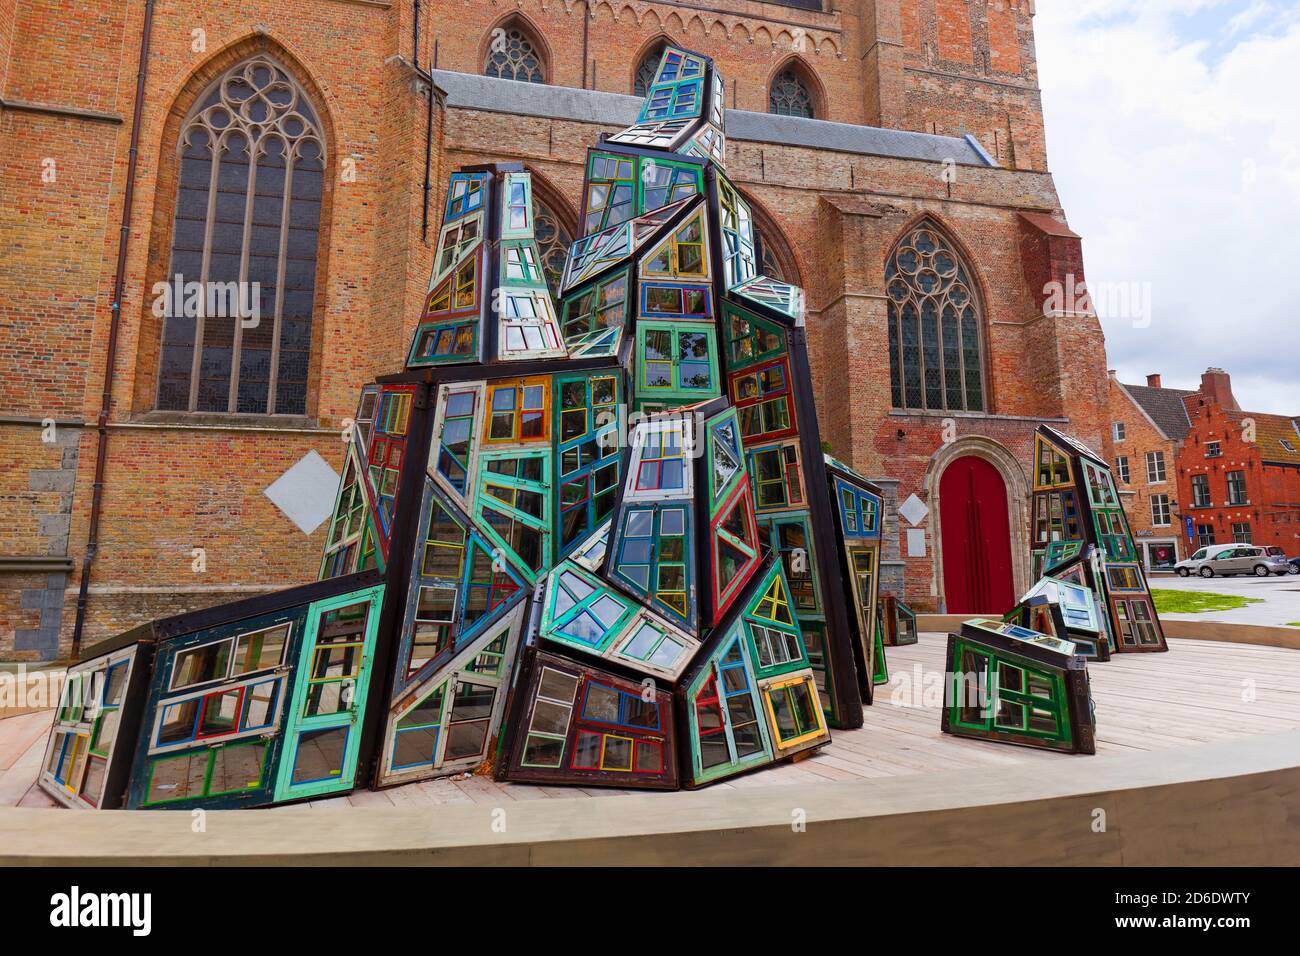 Installation de cadres de fenêtres colorés devant une église, Rouen, France Banque D'Images